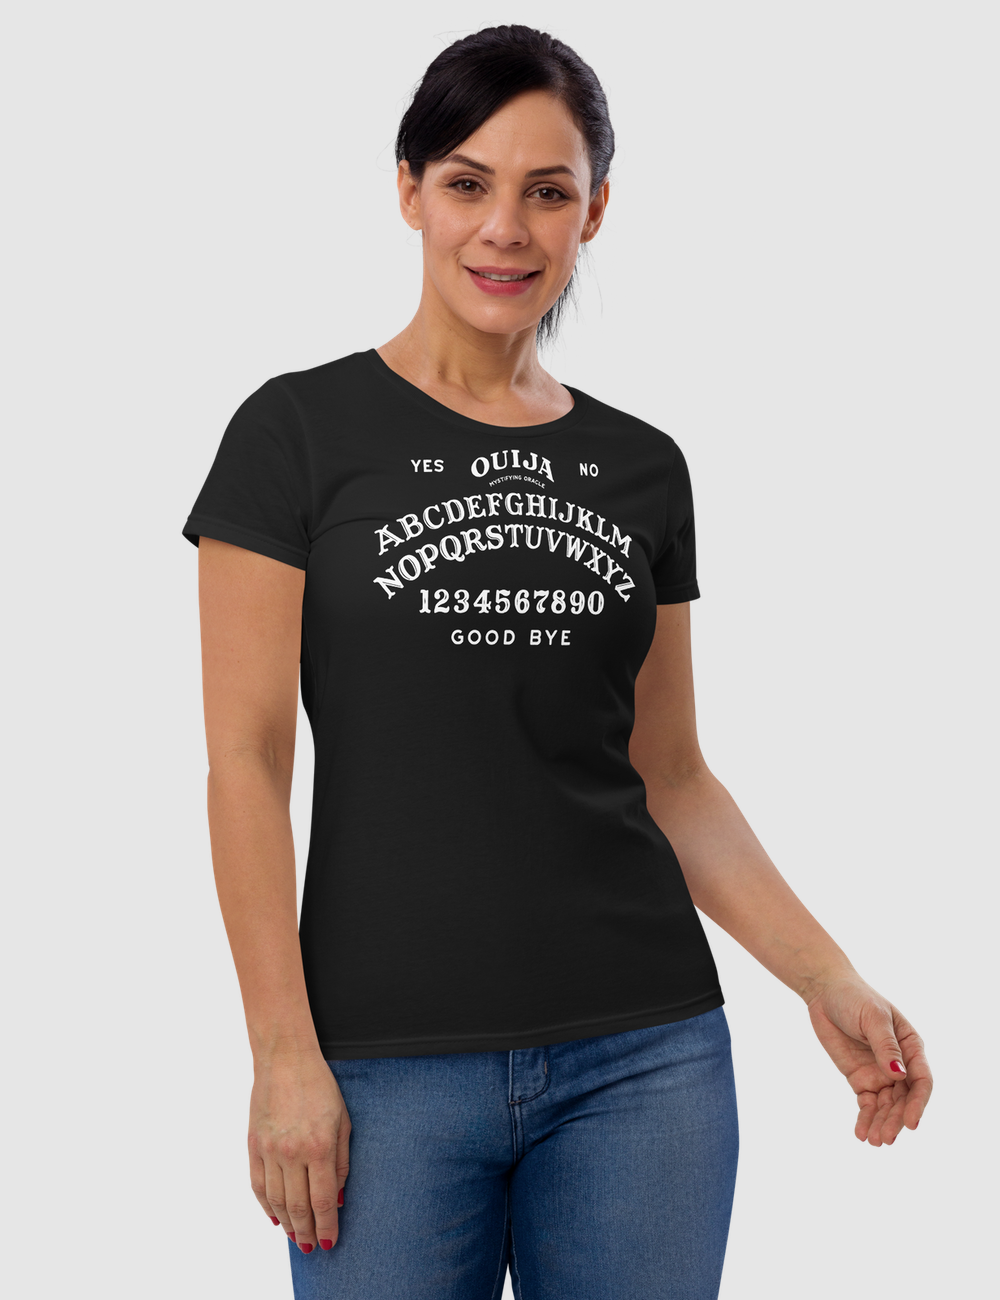 Ouija Board Women's Classic T-Shirt – OniTakai